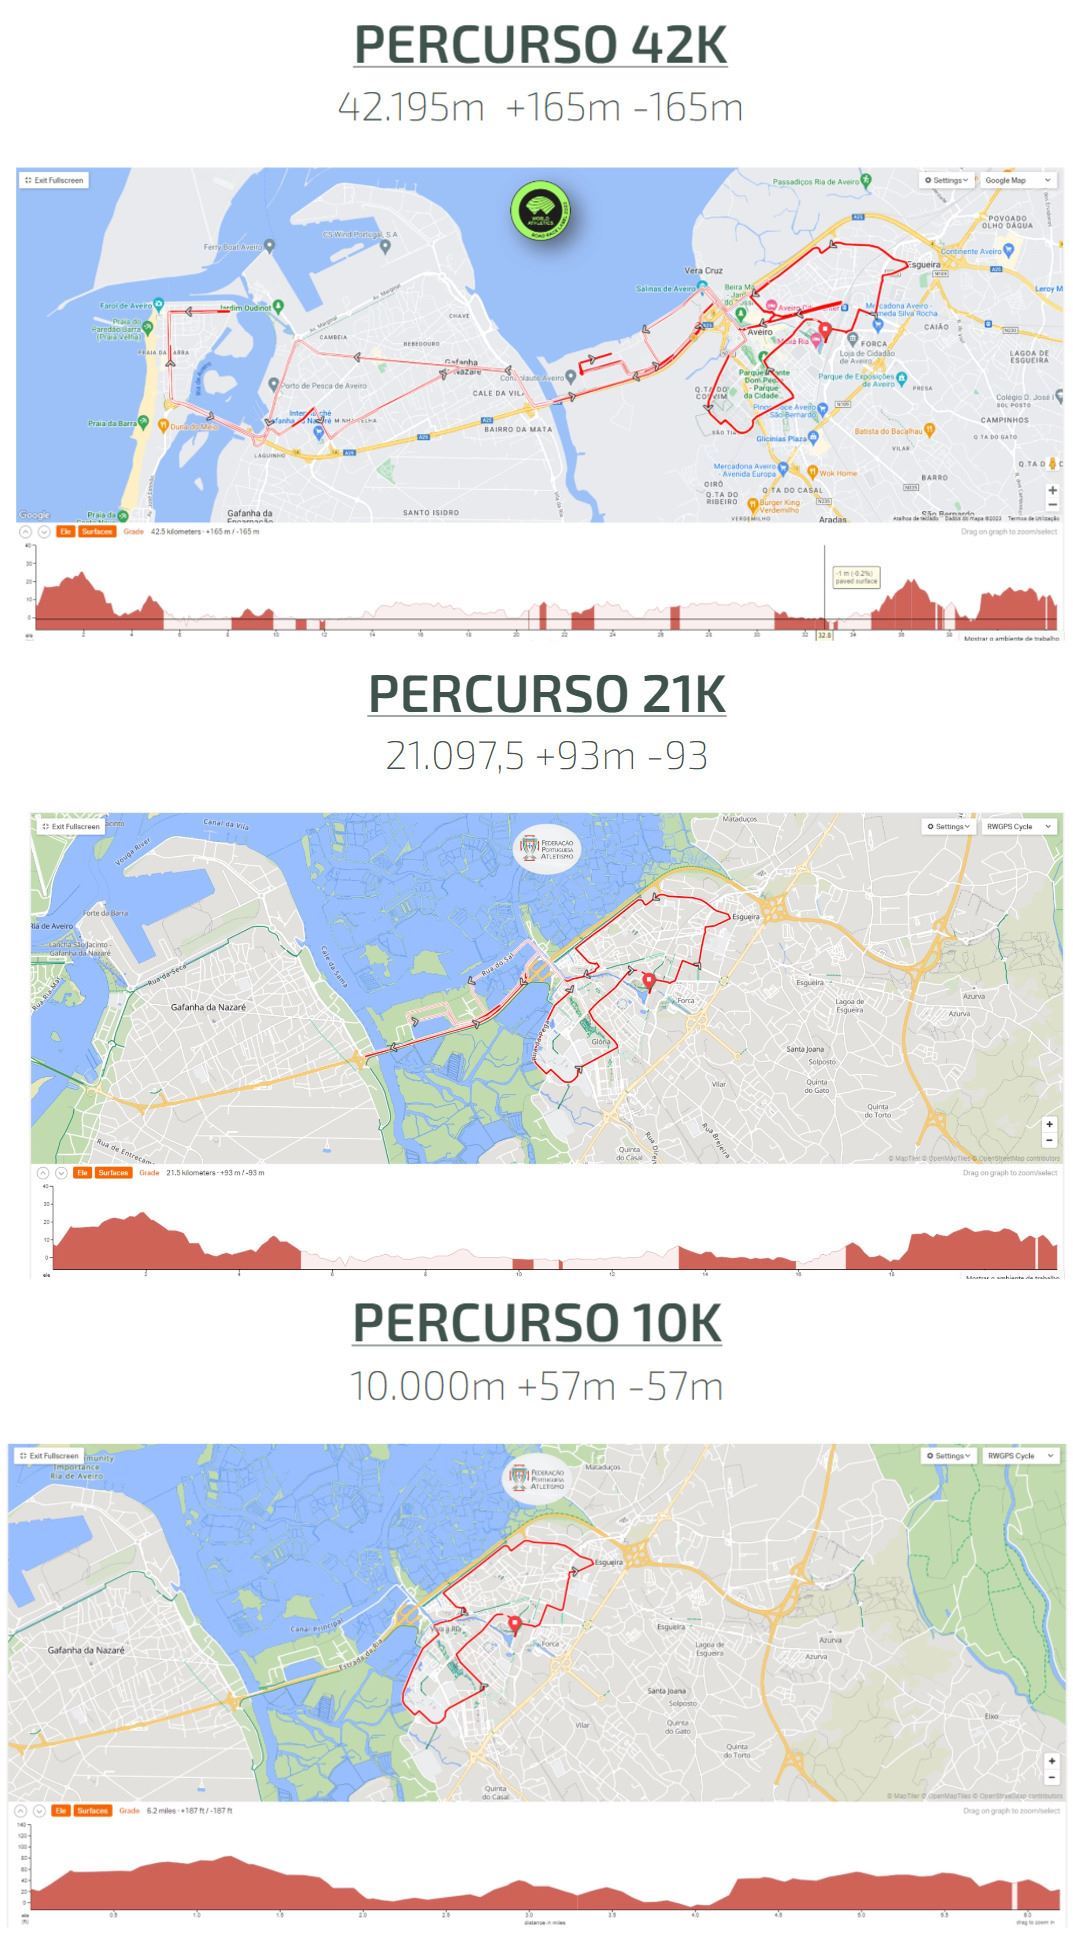 Maratona Da Europa - Aveiro MAPA DEL RECORRIDO DE